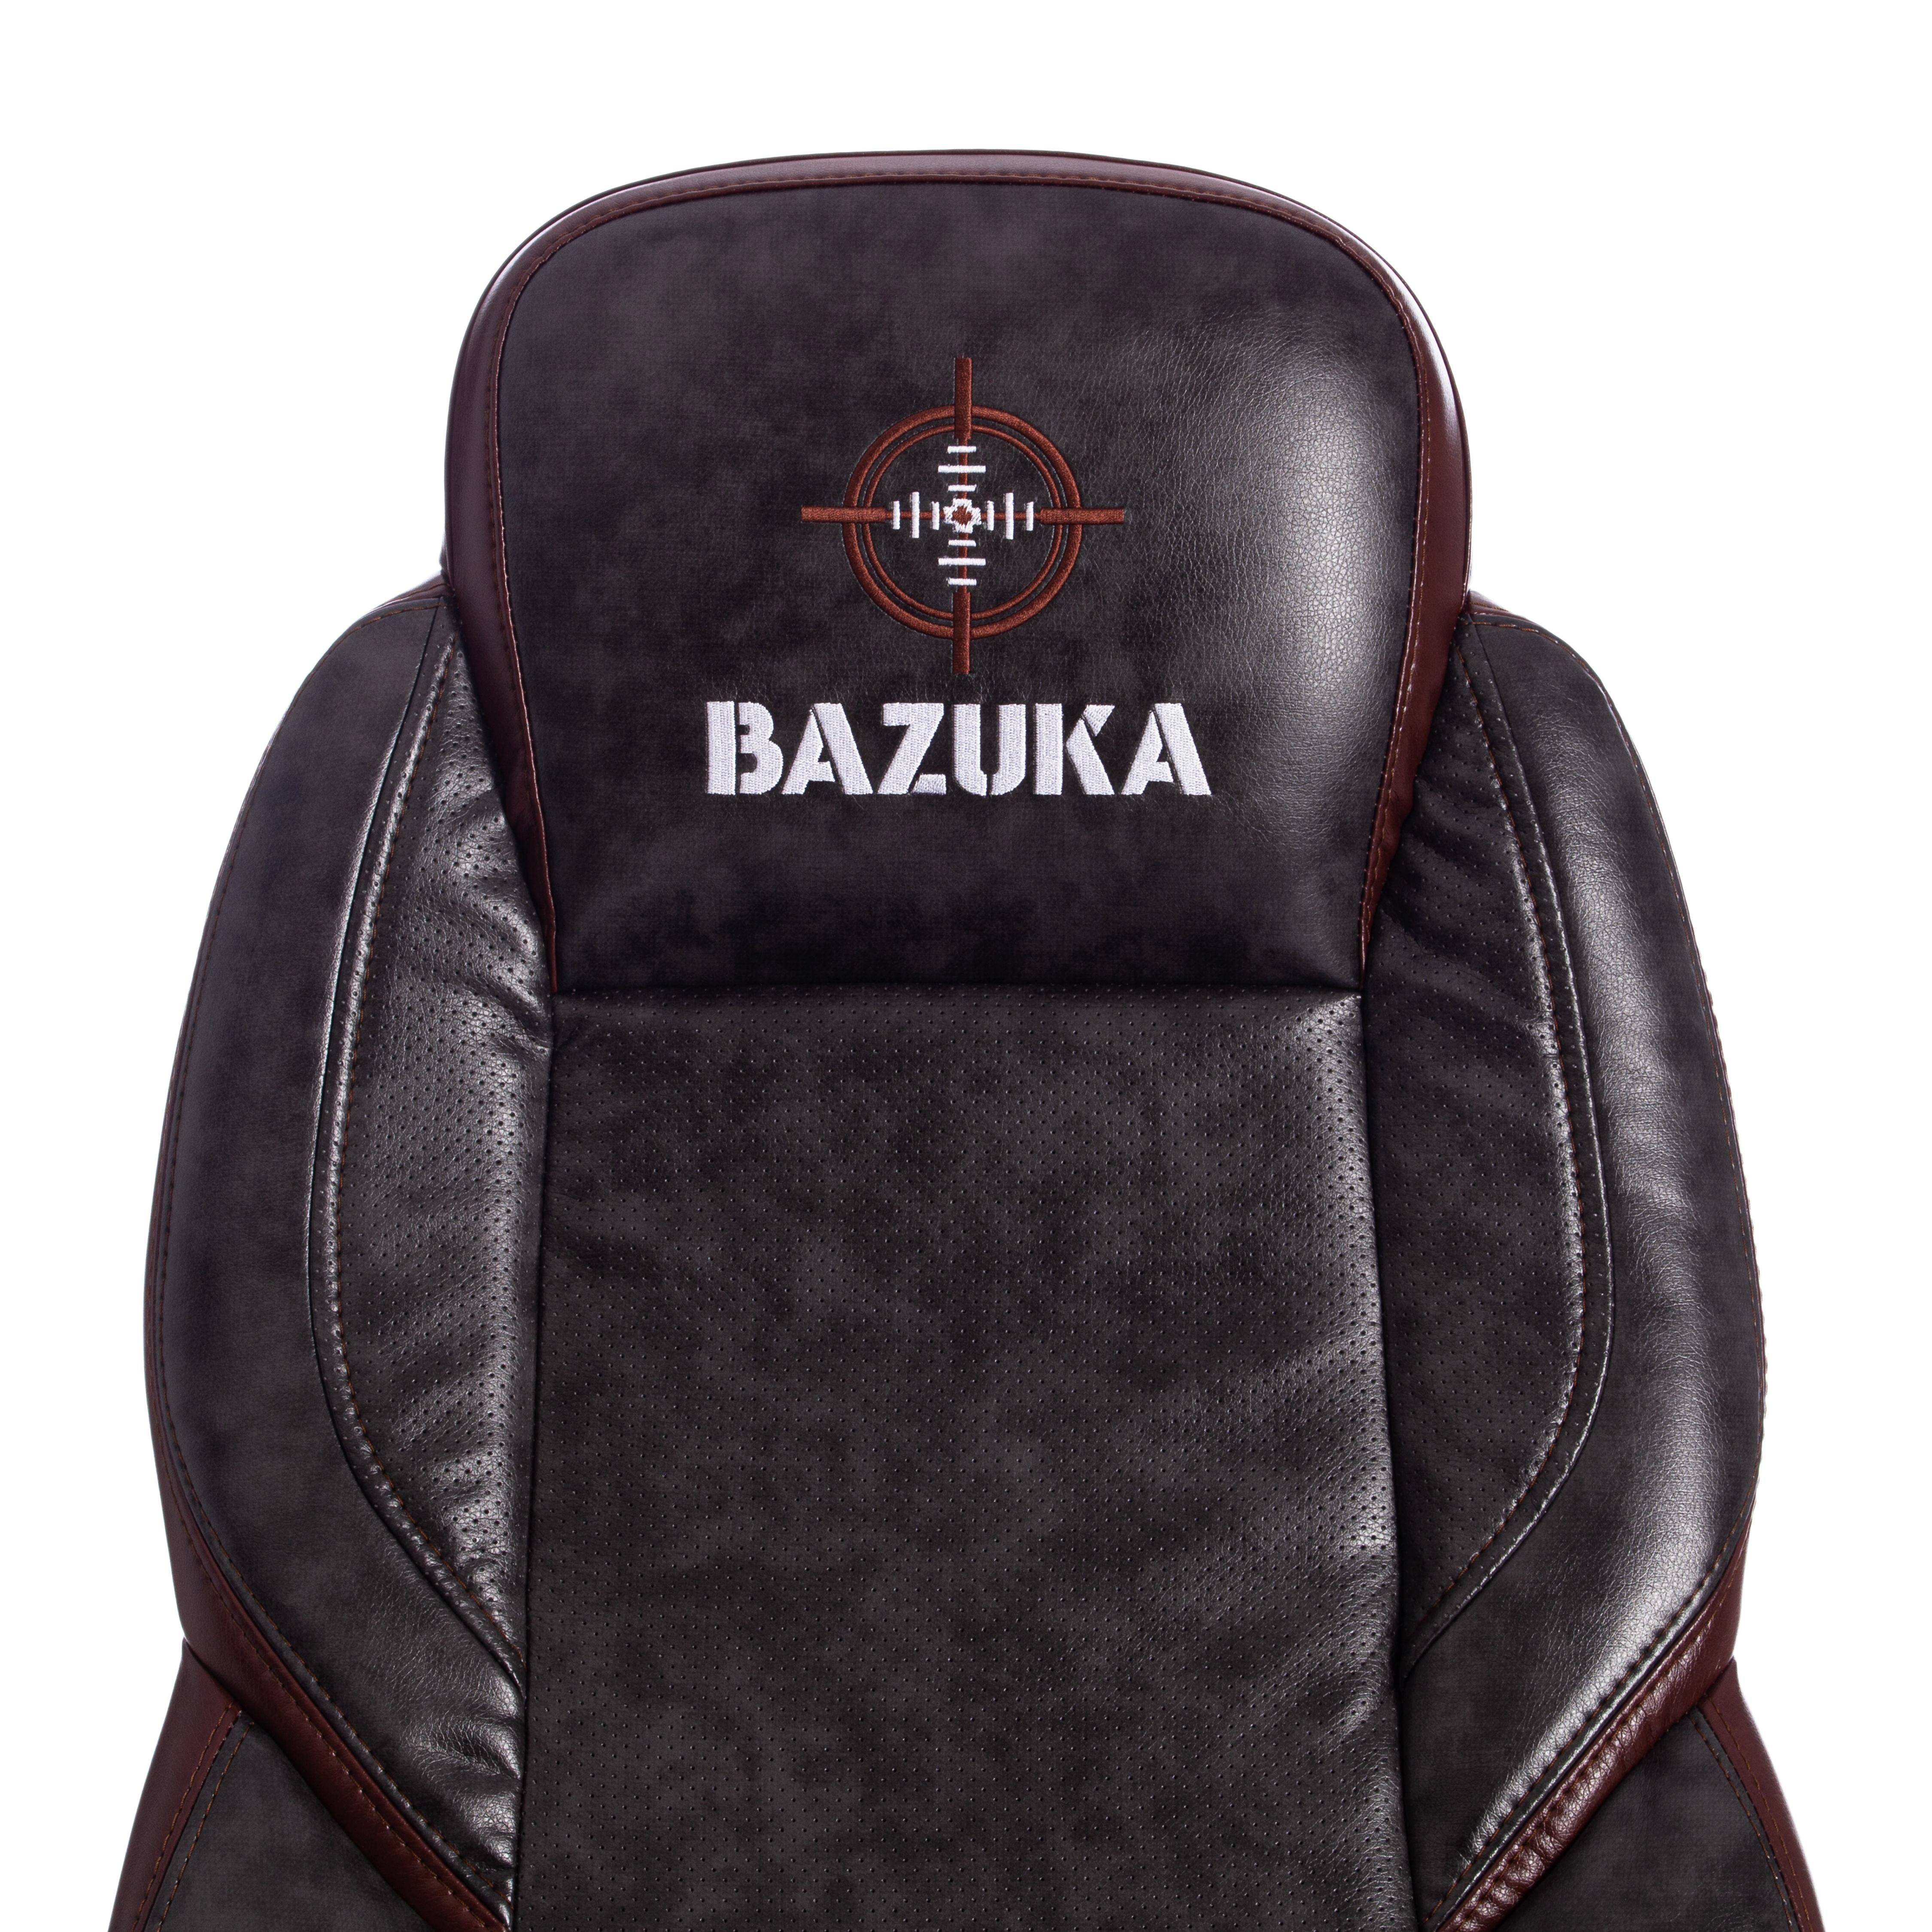 Кресло BAZUKA кож/зам, серый/коричневый, 2TONE/2TONE перф/2TONE